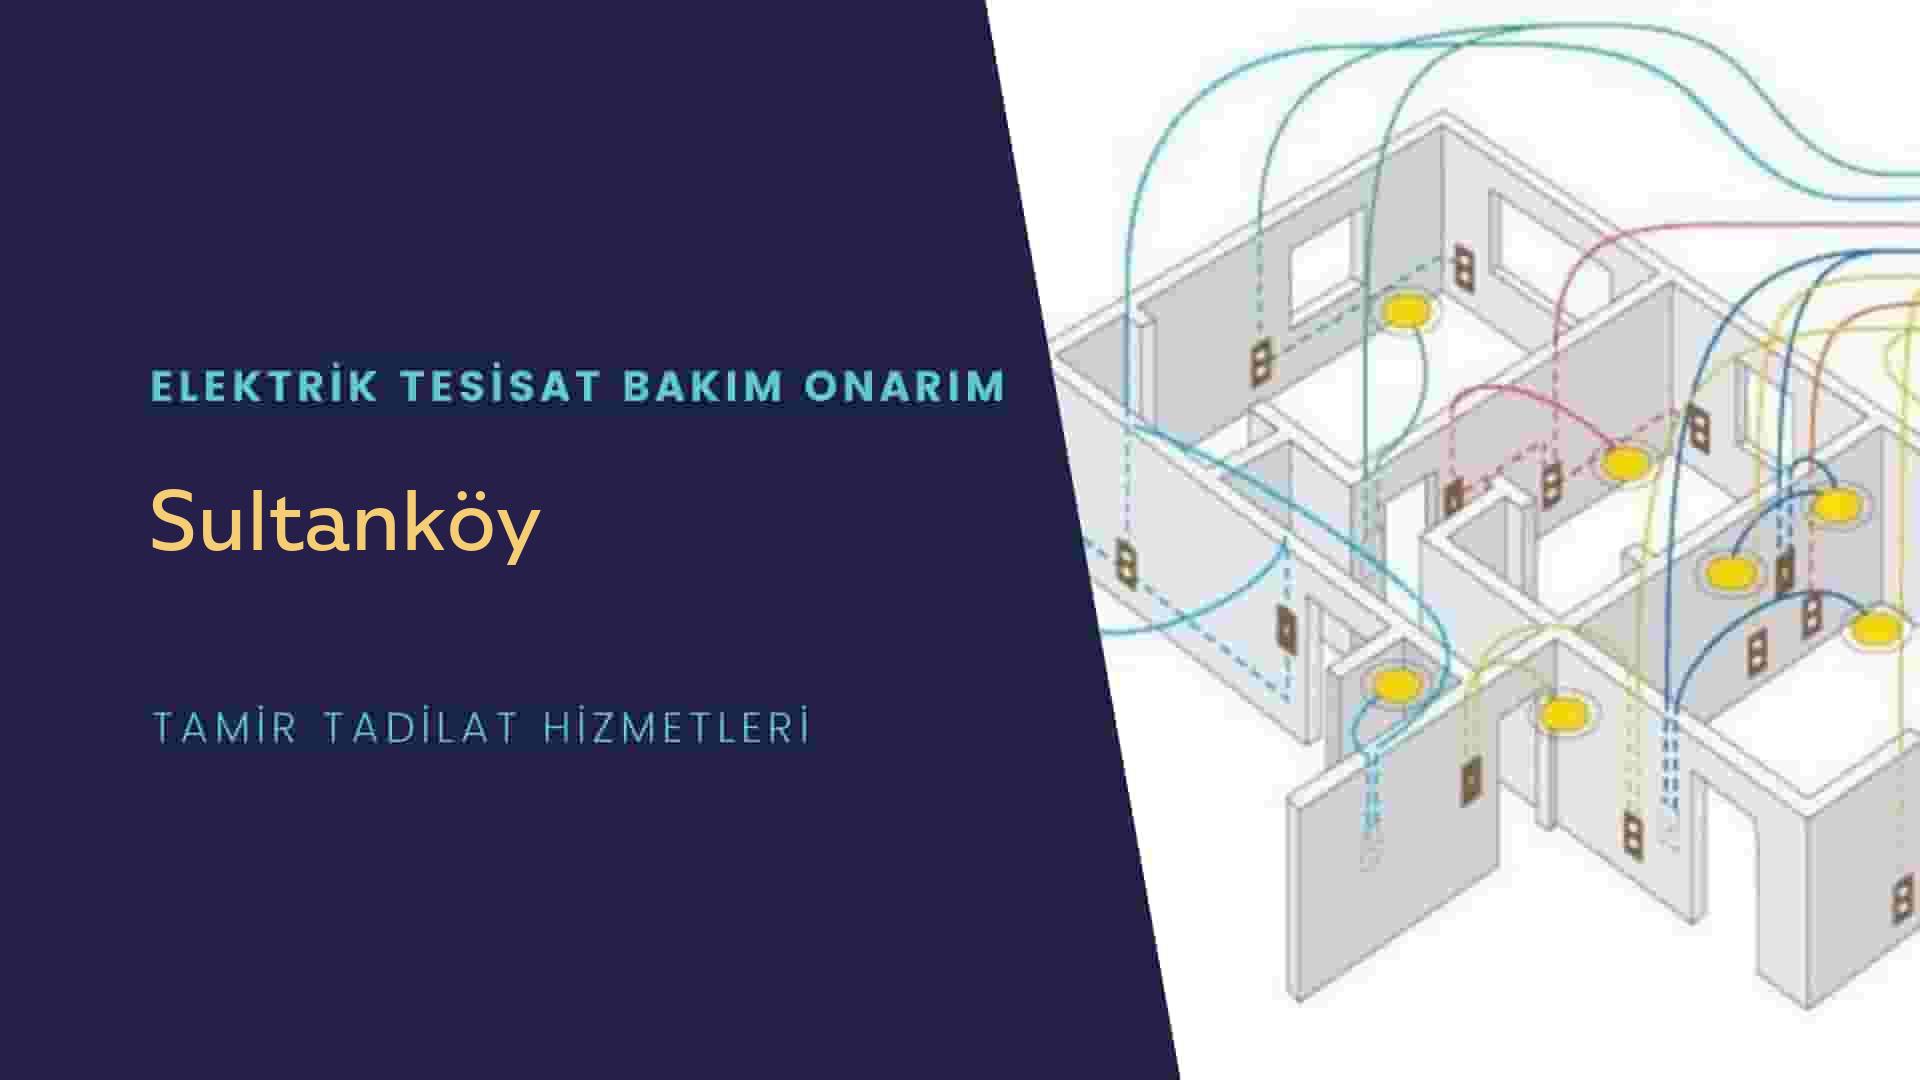 Sultanköy'de elektrik tesisatı ustalarımı arıyorsunuz doğru adrestenizi Sultanköy elektrik tesisatı ustalarımız 7/24 sizlere hizmet vermekten mutluluk duyar.